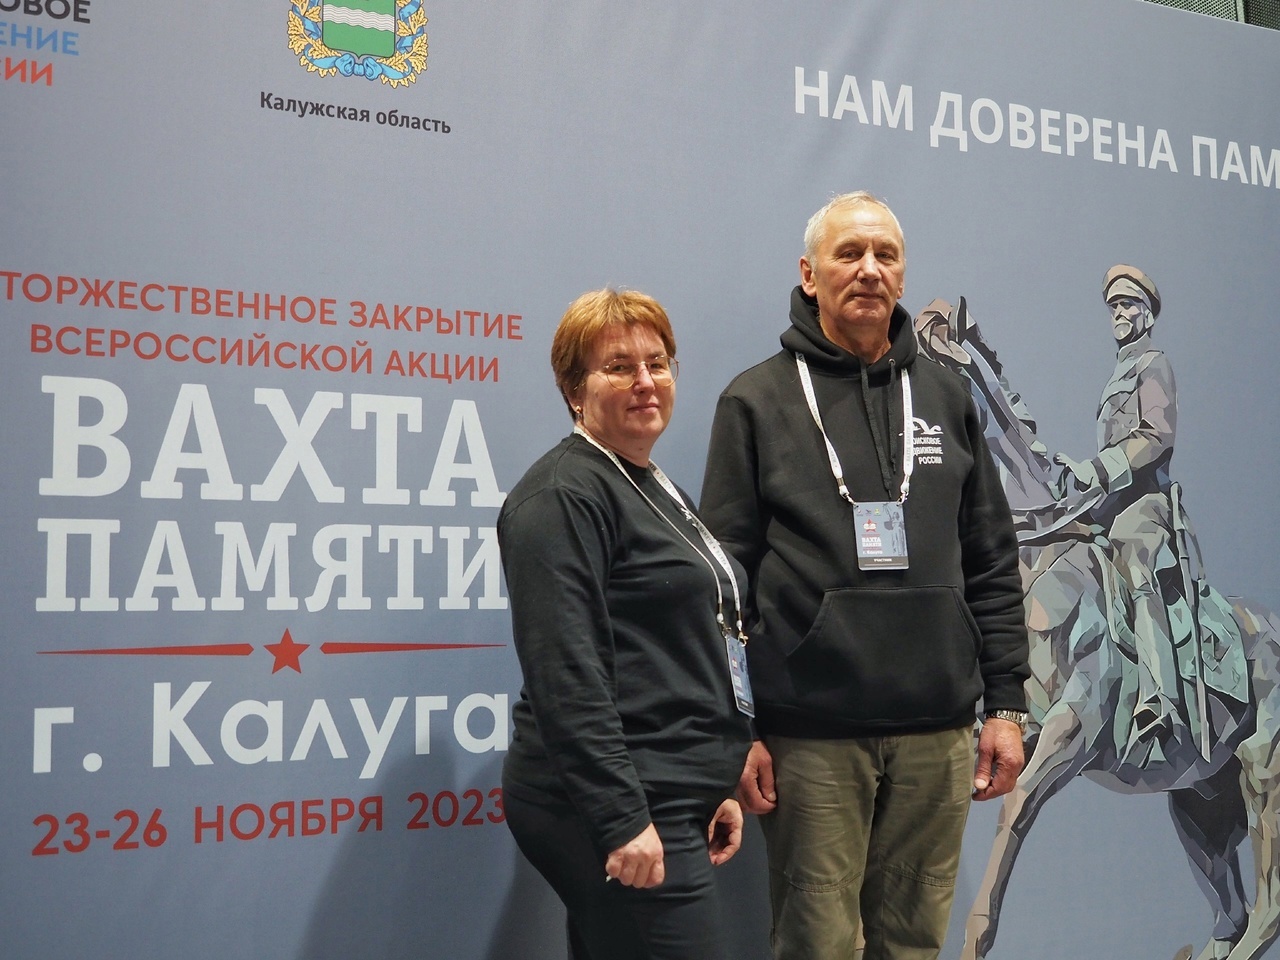 Оренбуржцы принимают участие в Торжественном закрытии Всероссийской акции «Вахта Памяти-2023» в Калуге